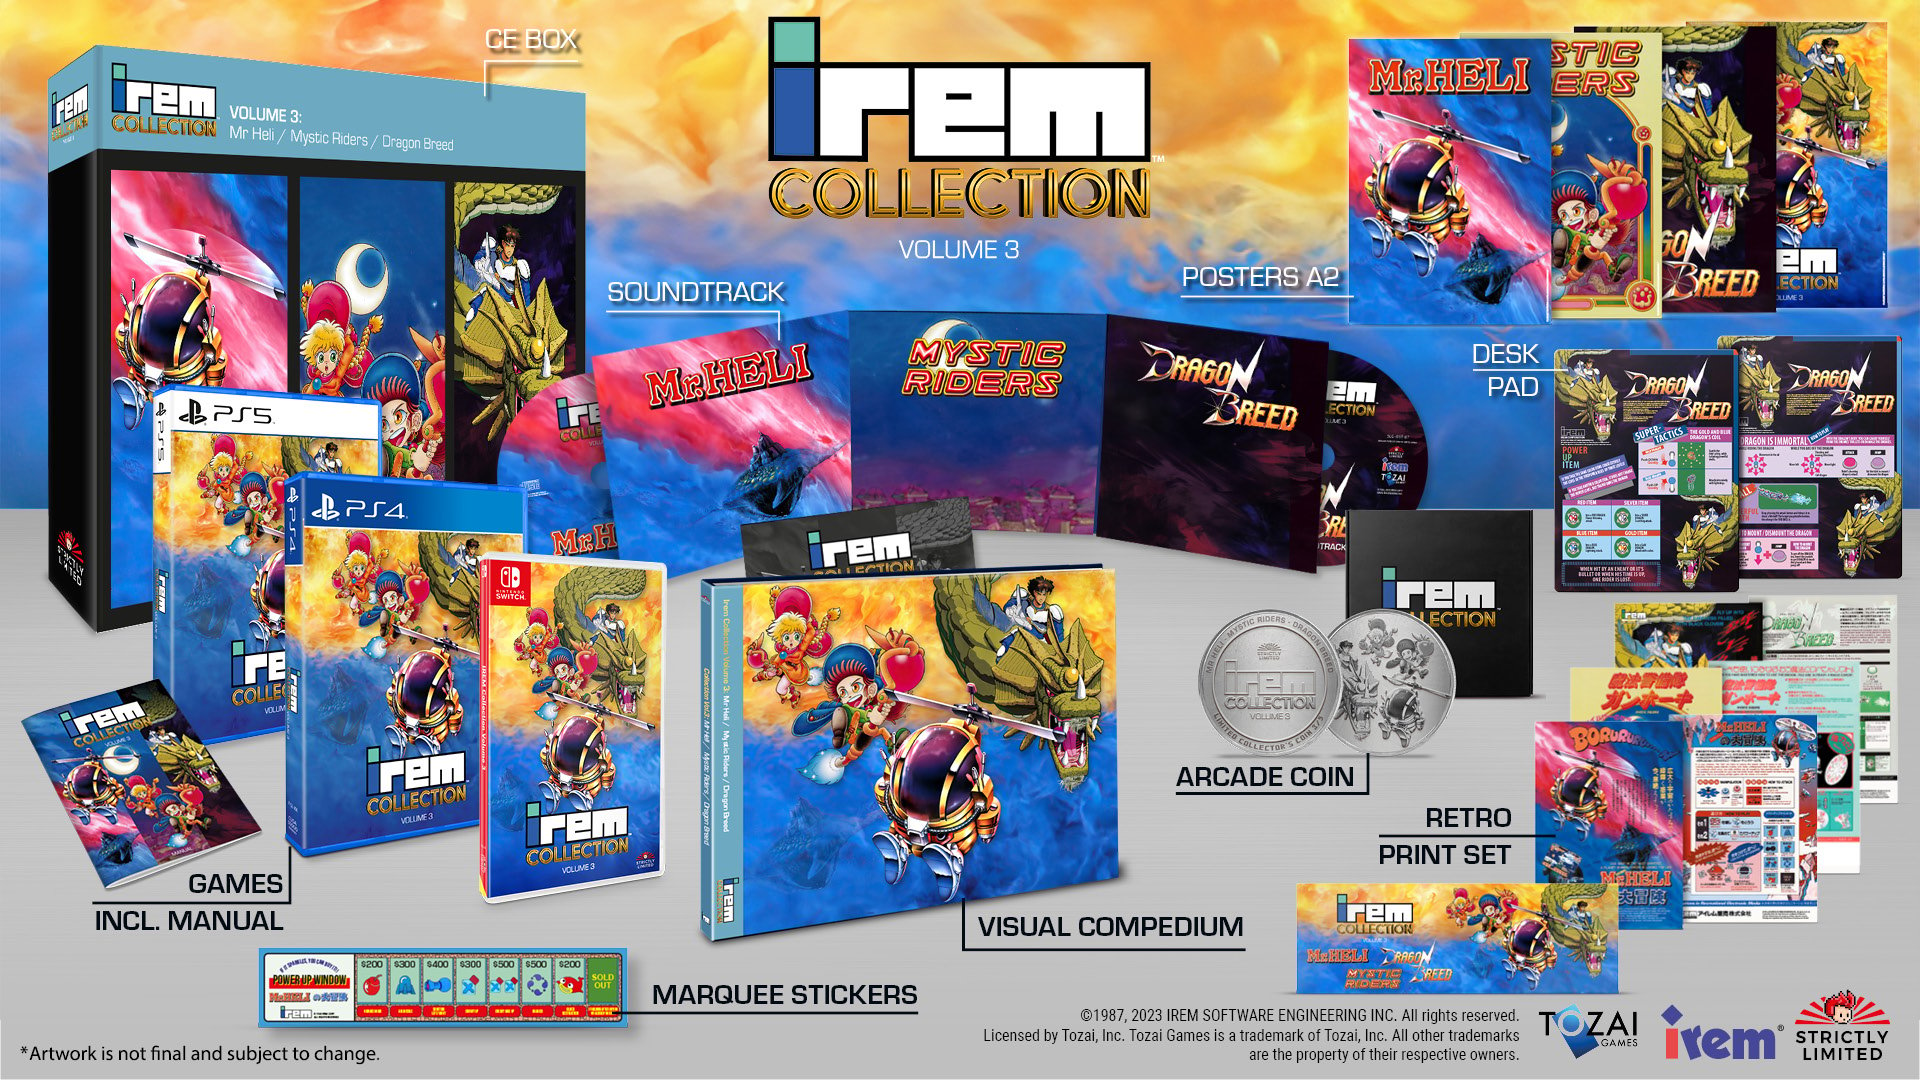 #Irem Collection legt Action-Klassiker neu auf – diese Games sind in Vol. 3 dabei